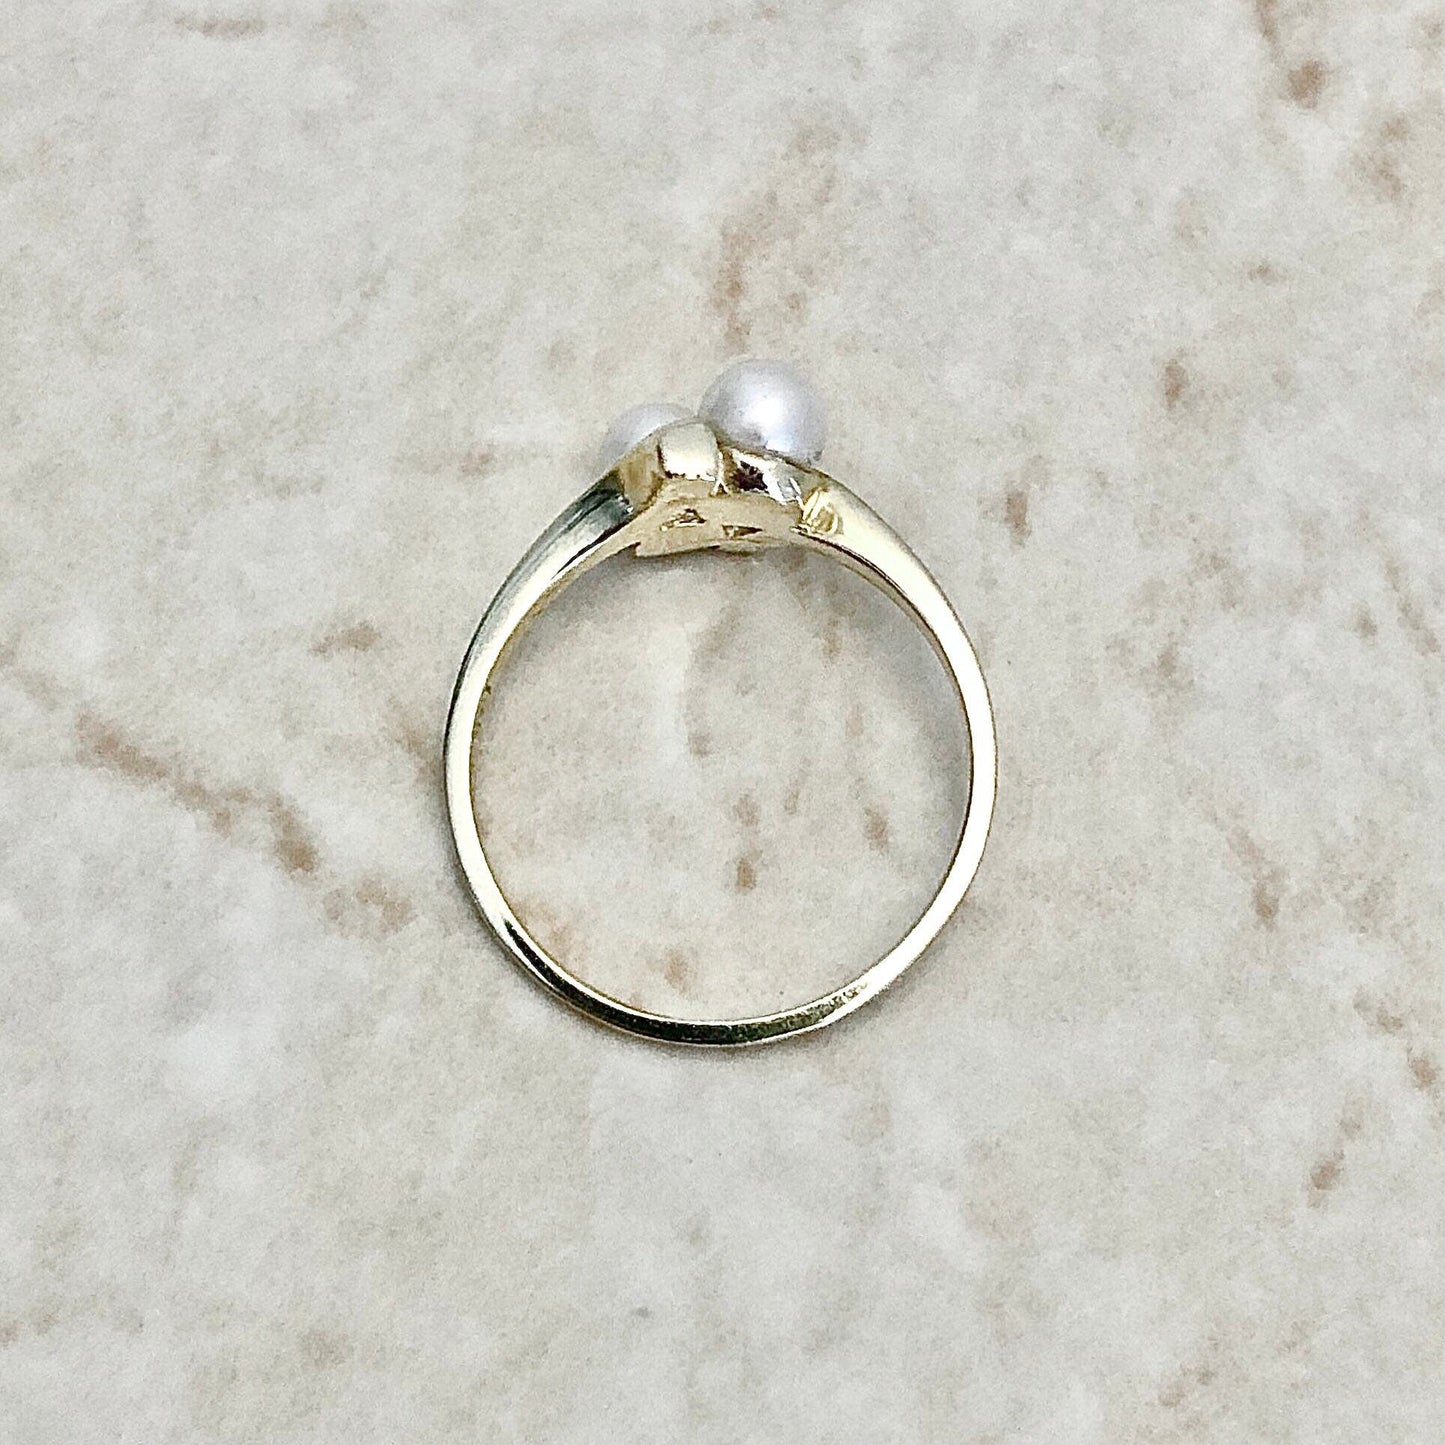 Vintage Pearl Toi & Moi Ring - 14 Karat Yellow Gold Pearl Bypass Ring - Pearl Ring - June Birthstone - Birthday Gift - Cocktail Ring